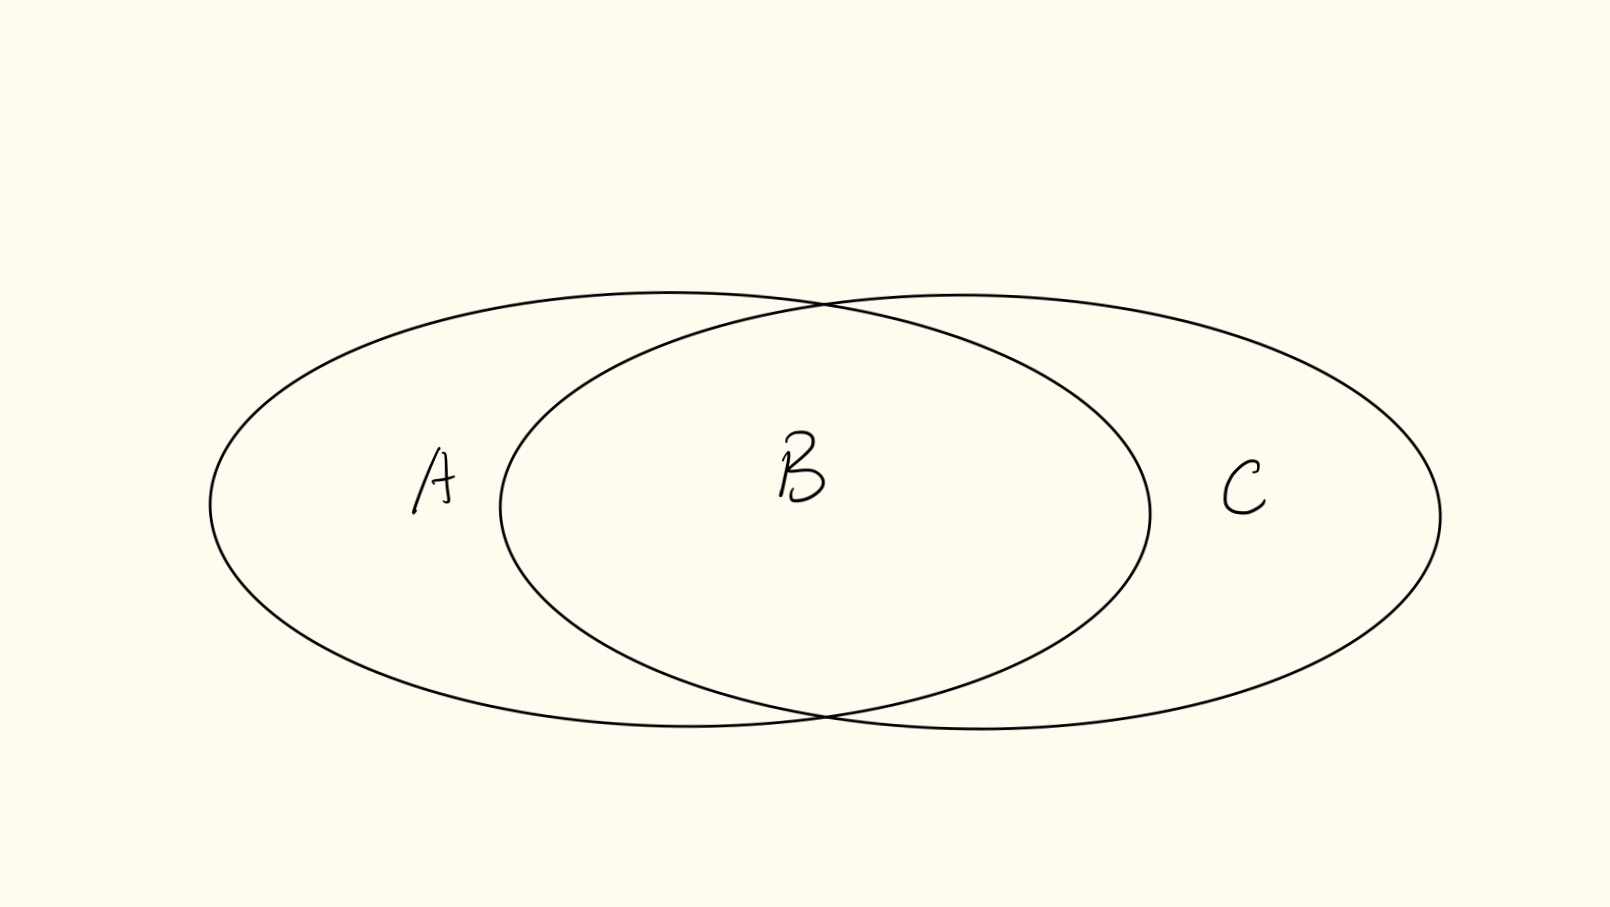 如果简图中两个椭圆分别为 iPad Pro 和纸笔的功能，因为 A 和 C 的存在忽略交集 B 的部分，显然不够全面